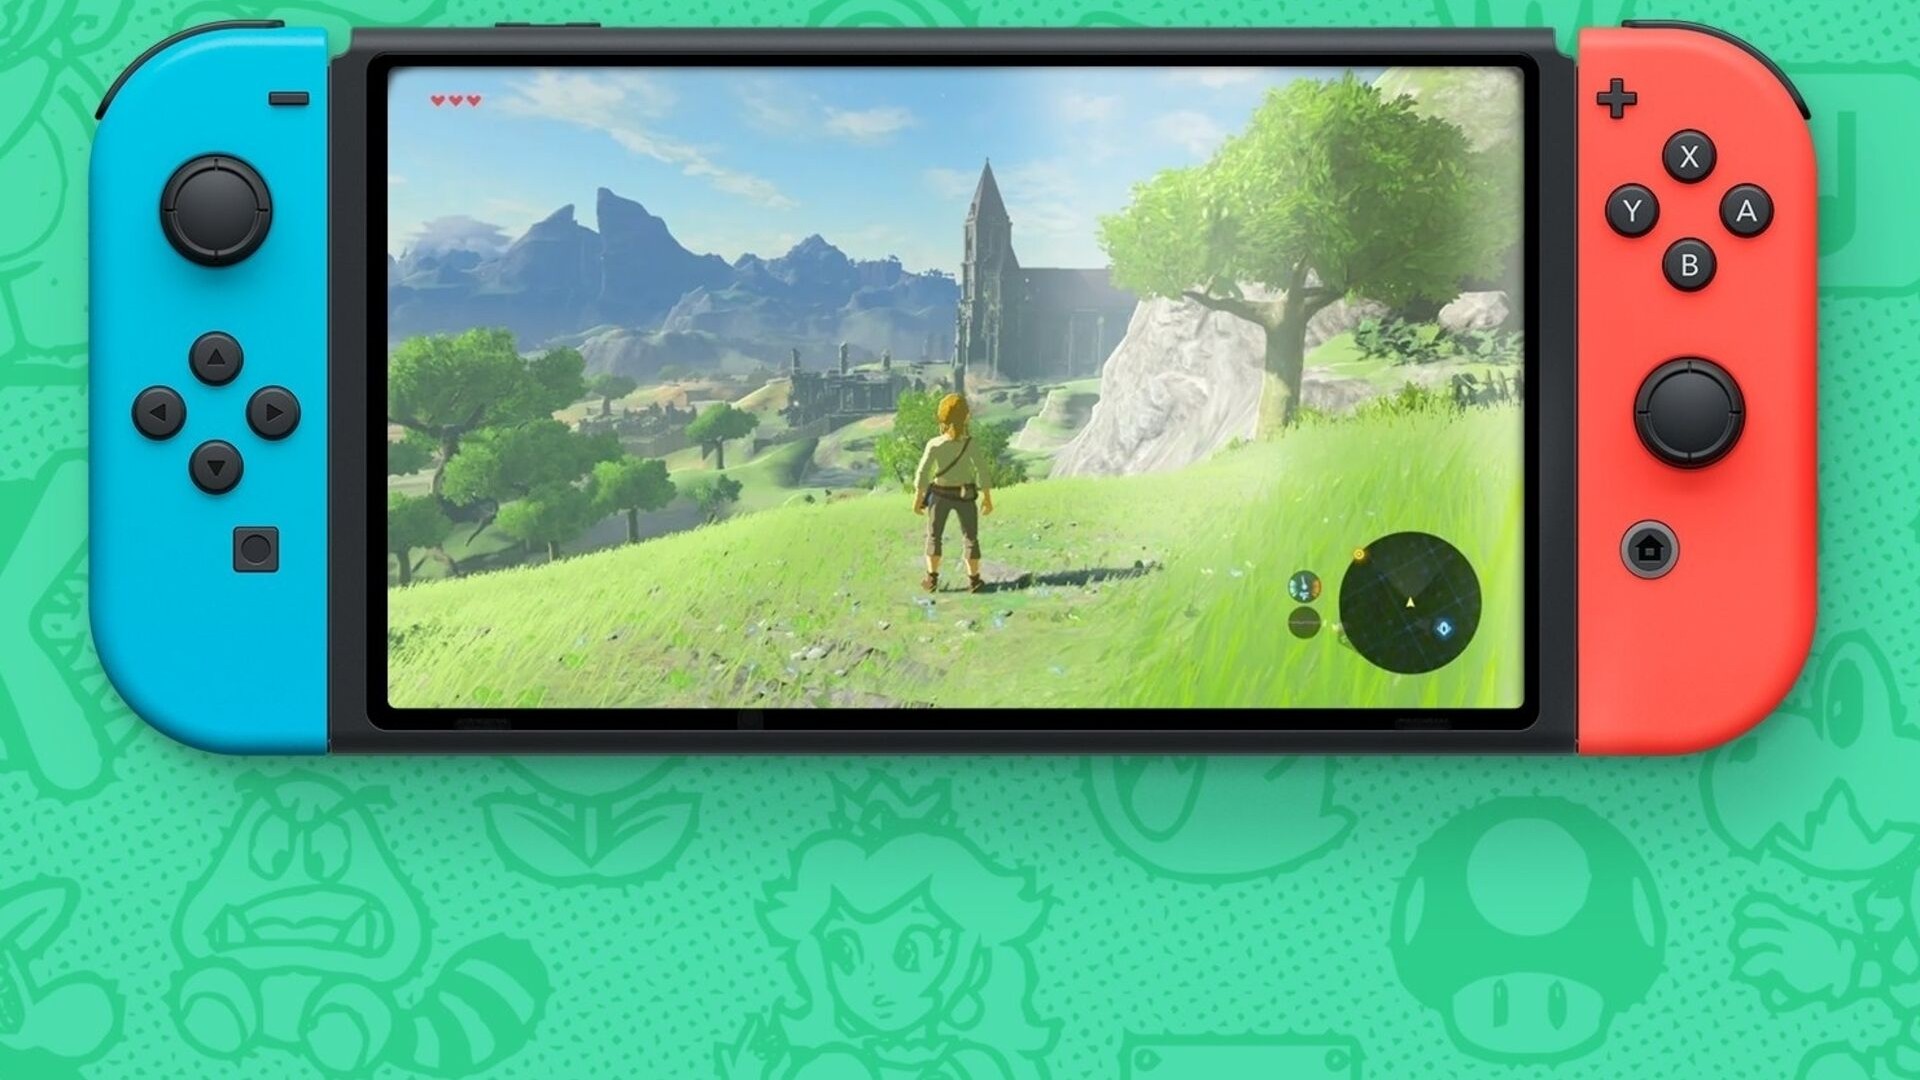 Nintendo: Vaga indica novo console e retro compatibilidade